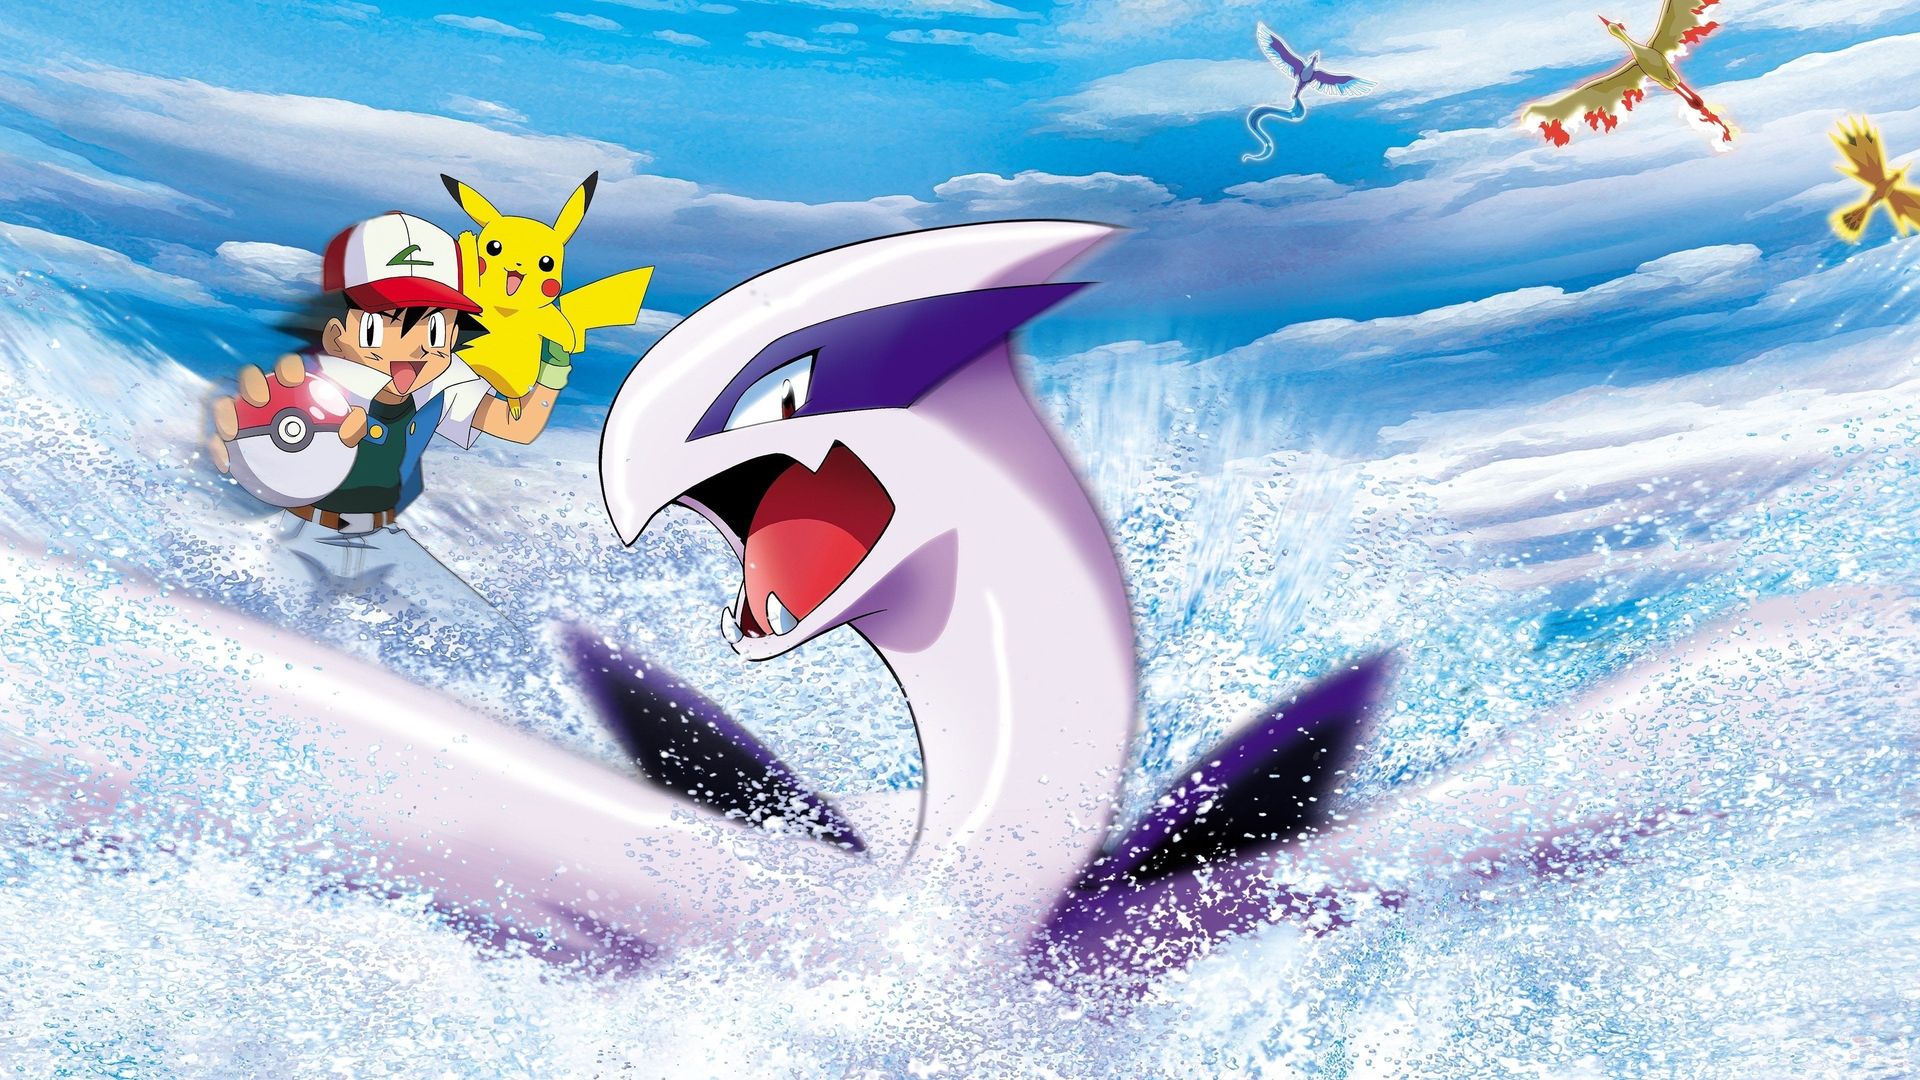 Pokémon: The Movie 2000 Backdrop